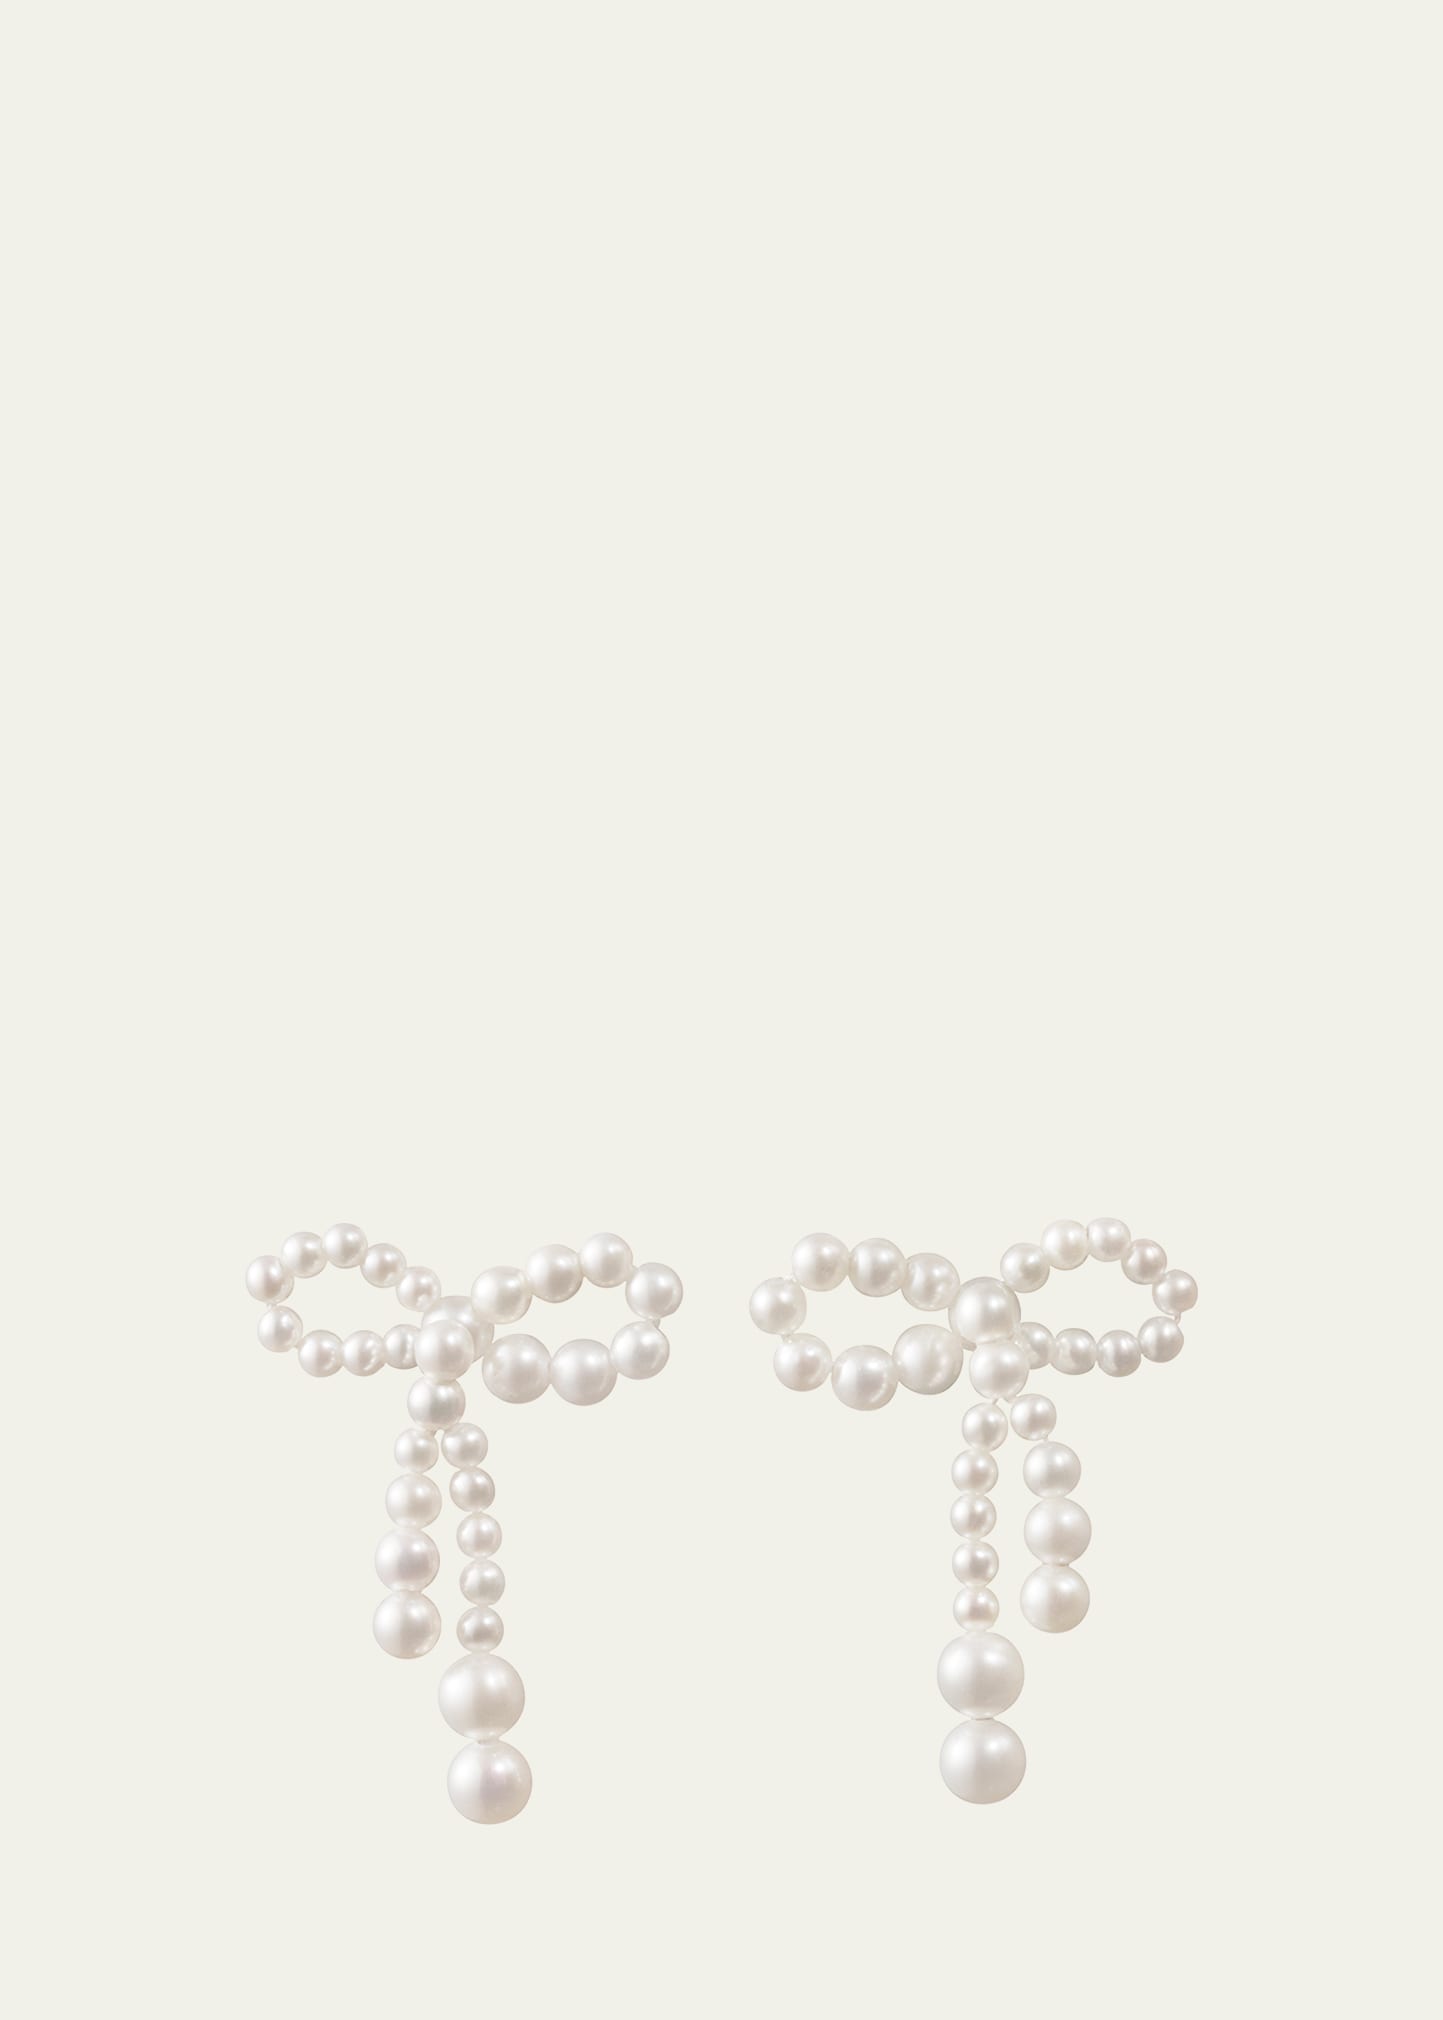 Rosette De Perles Small Bow Earrings in Freshwater Pearls